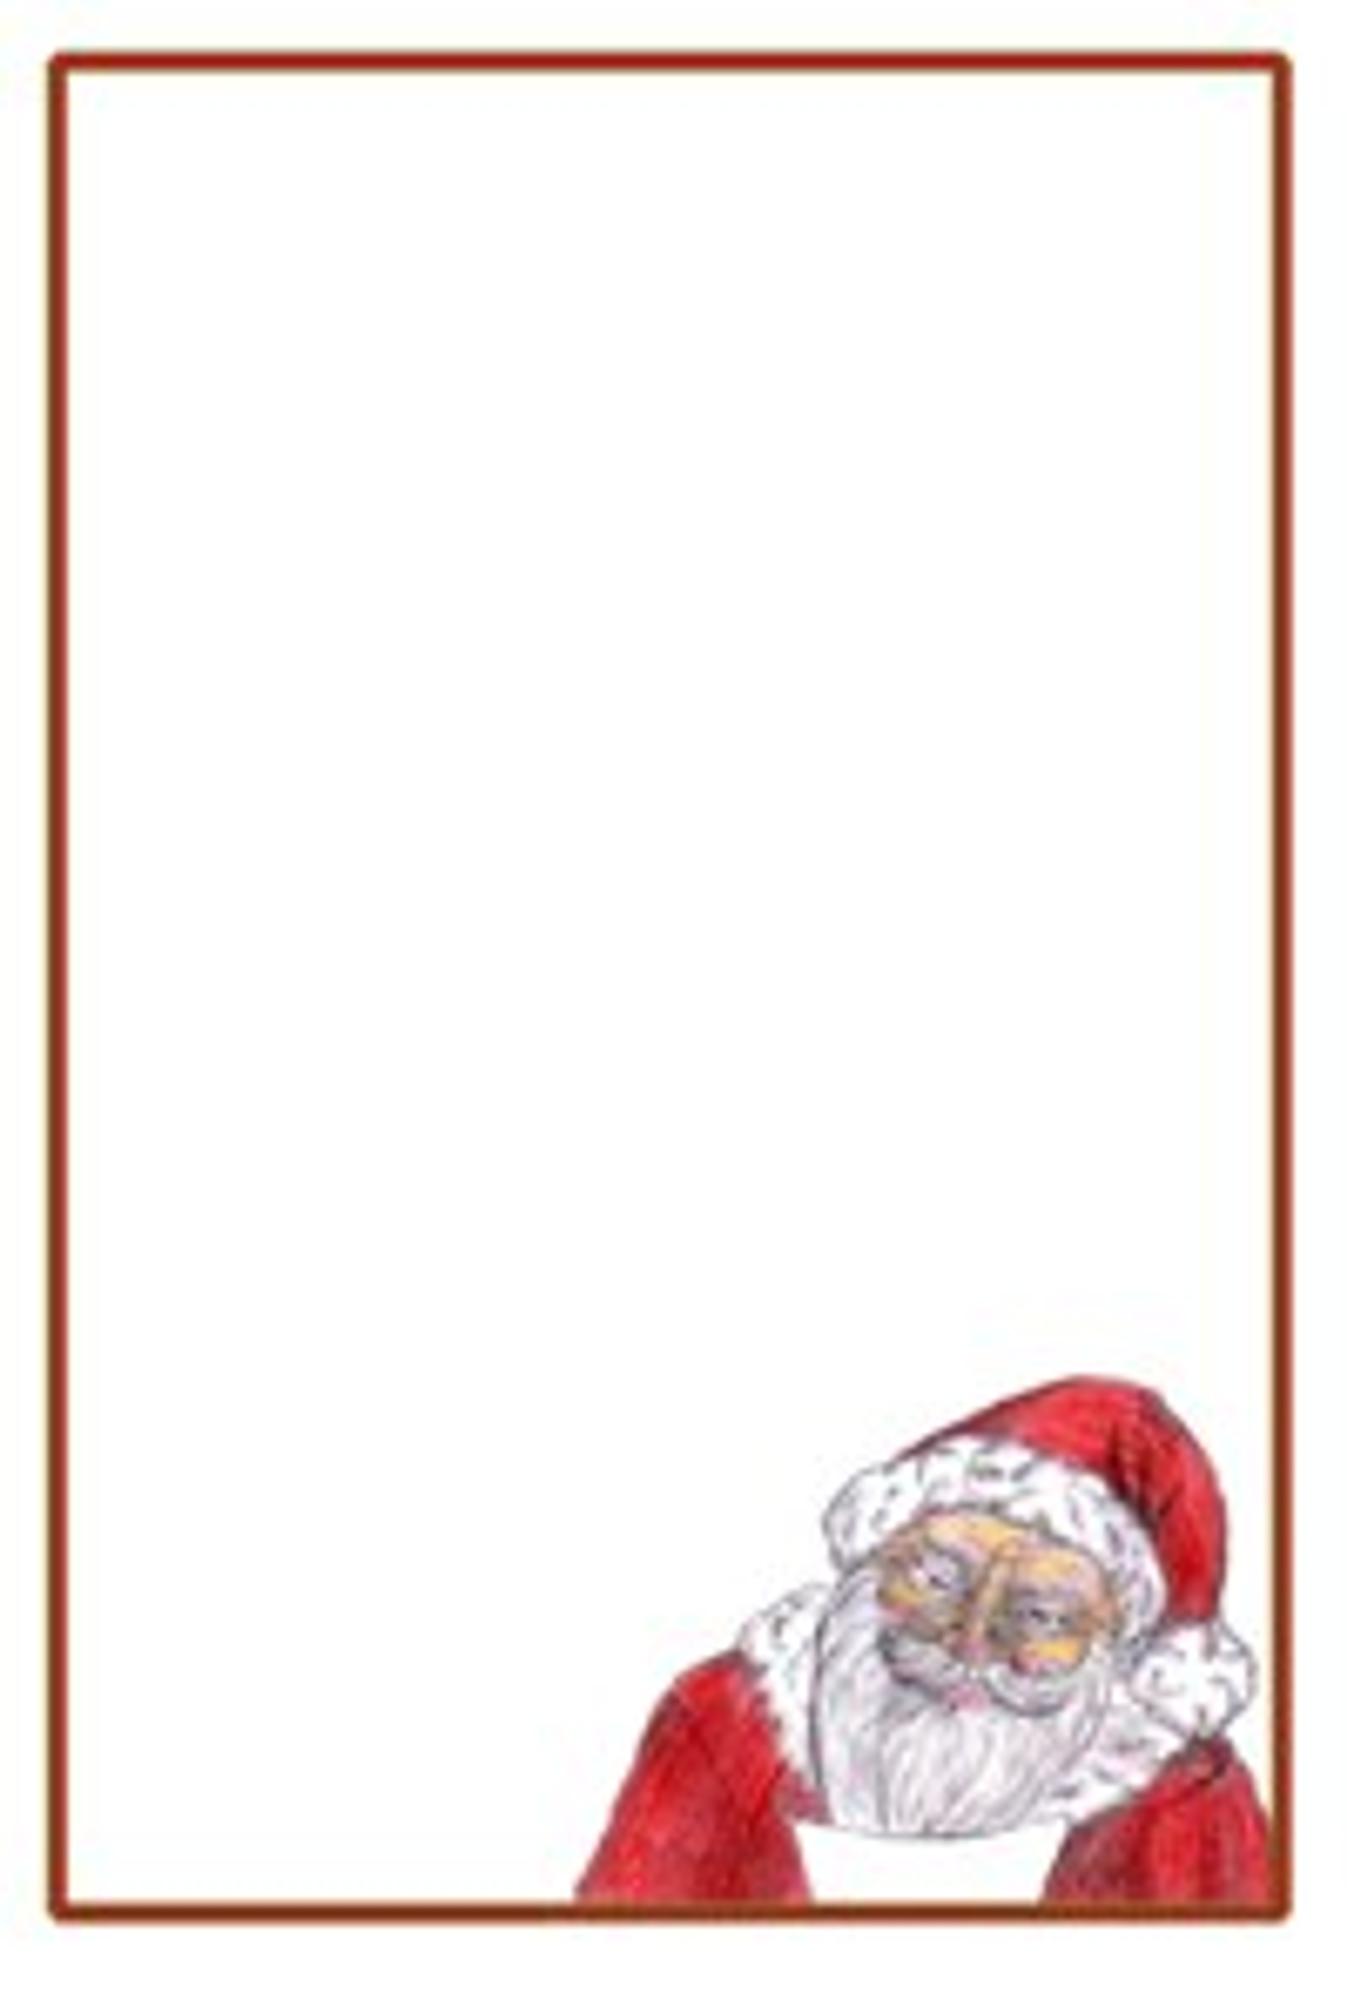 Wunschzettel-Vorlage mit Weihnachtsmann